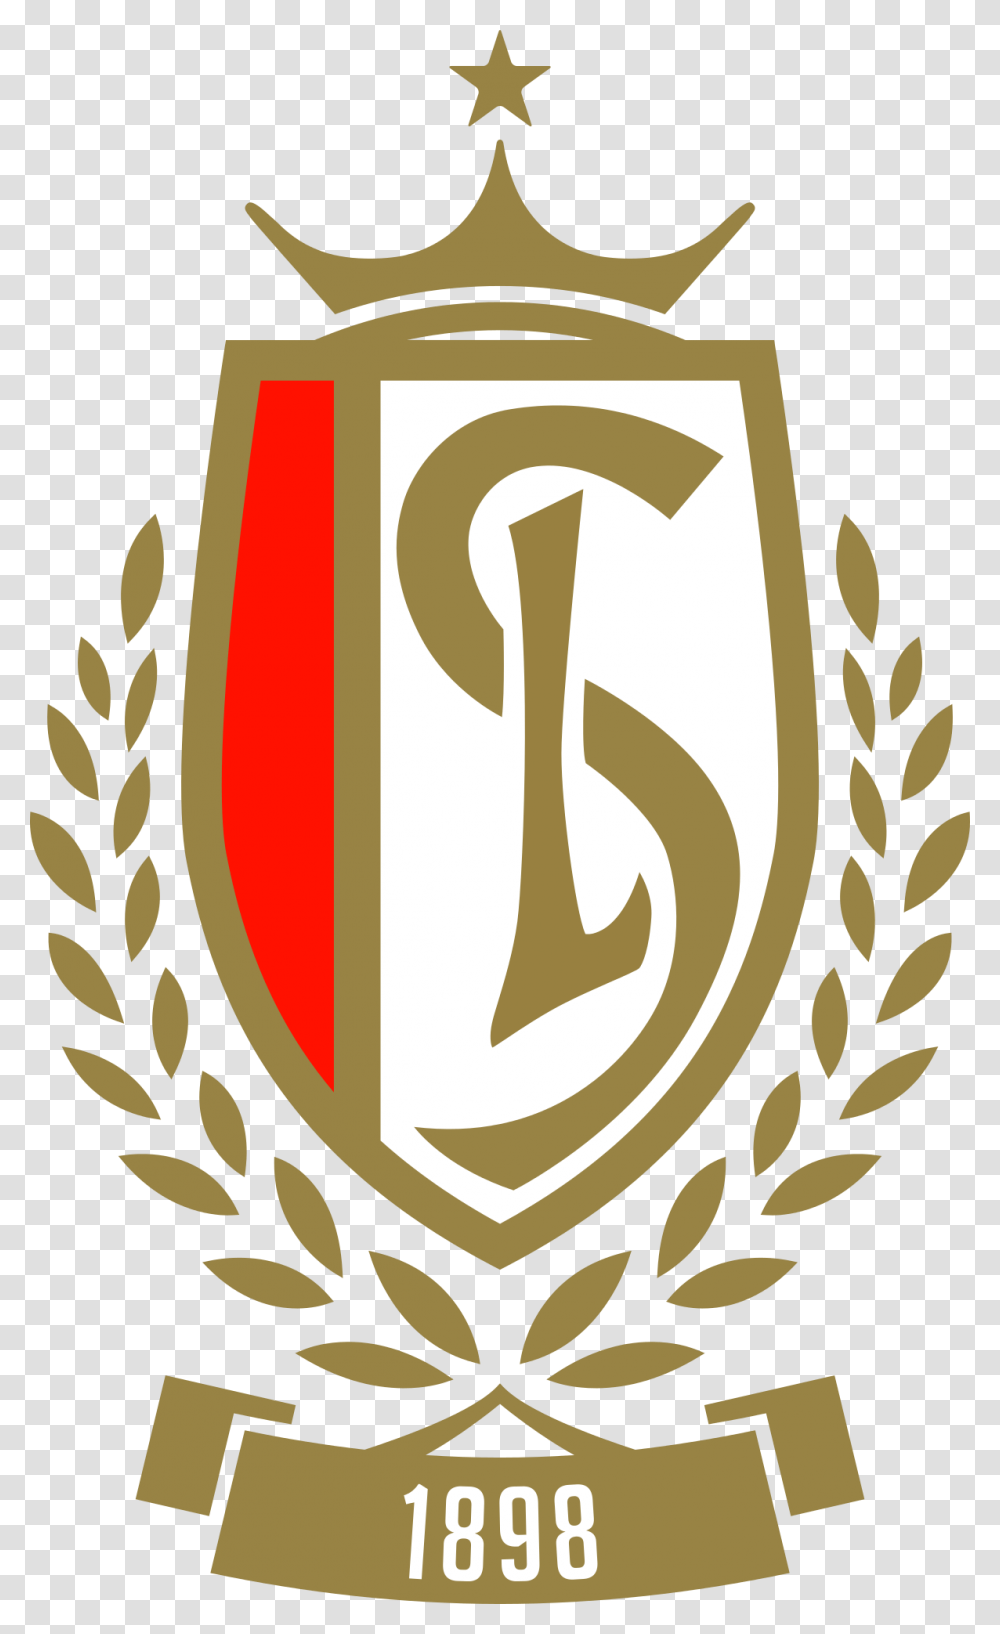 Royal Standard De Lige Logo Standard Lige, Armor, Shield, Poster Transparent Png